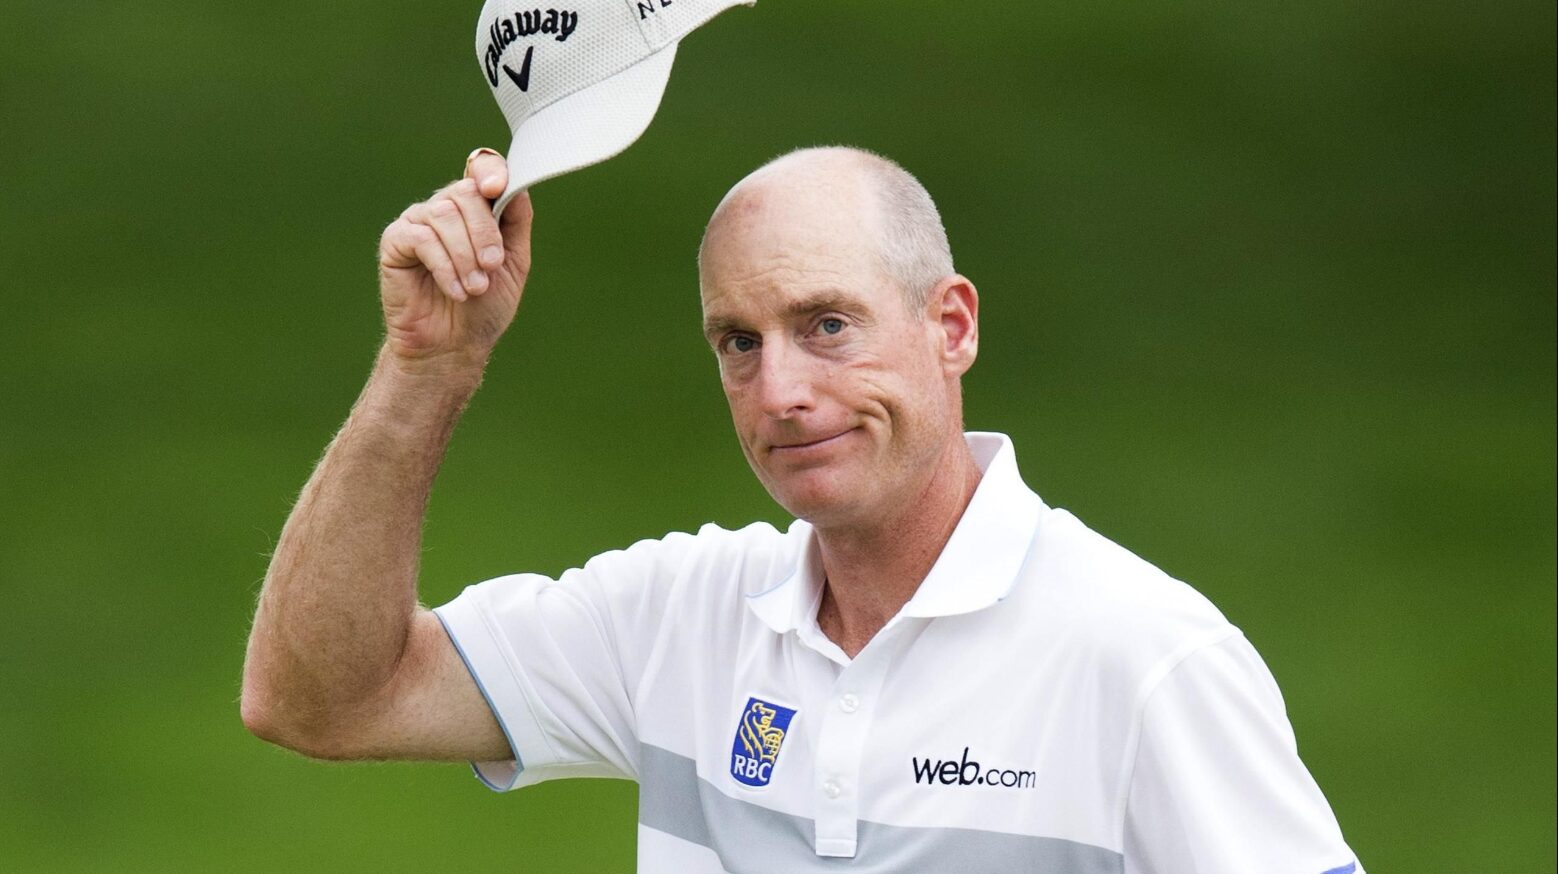 Jim Furyk, An American professional golferCourtesy:Eurosports